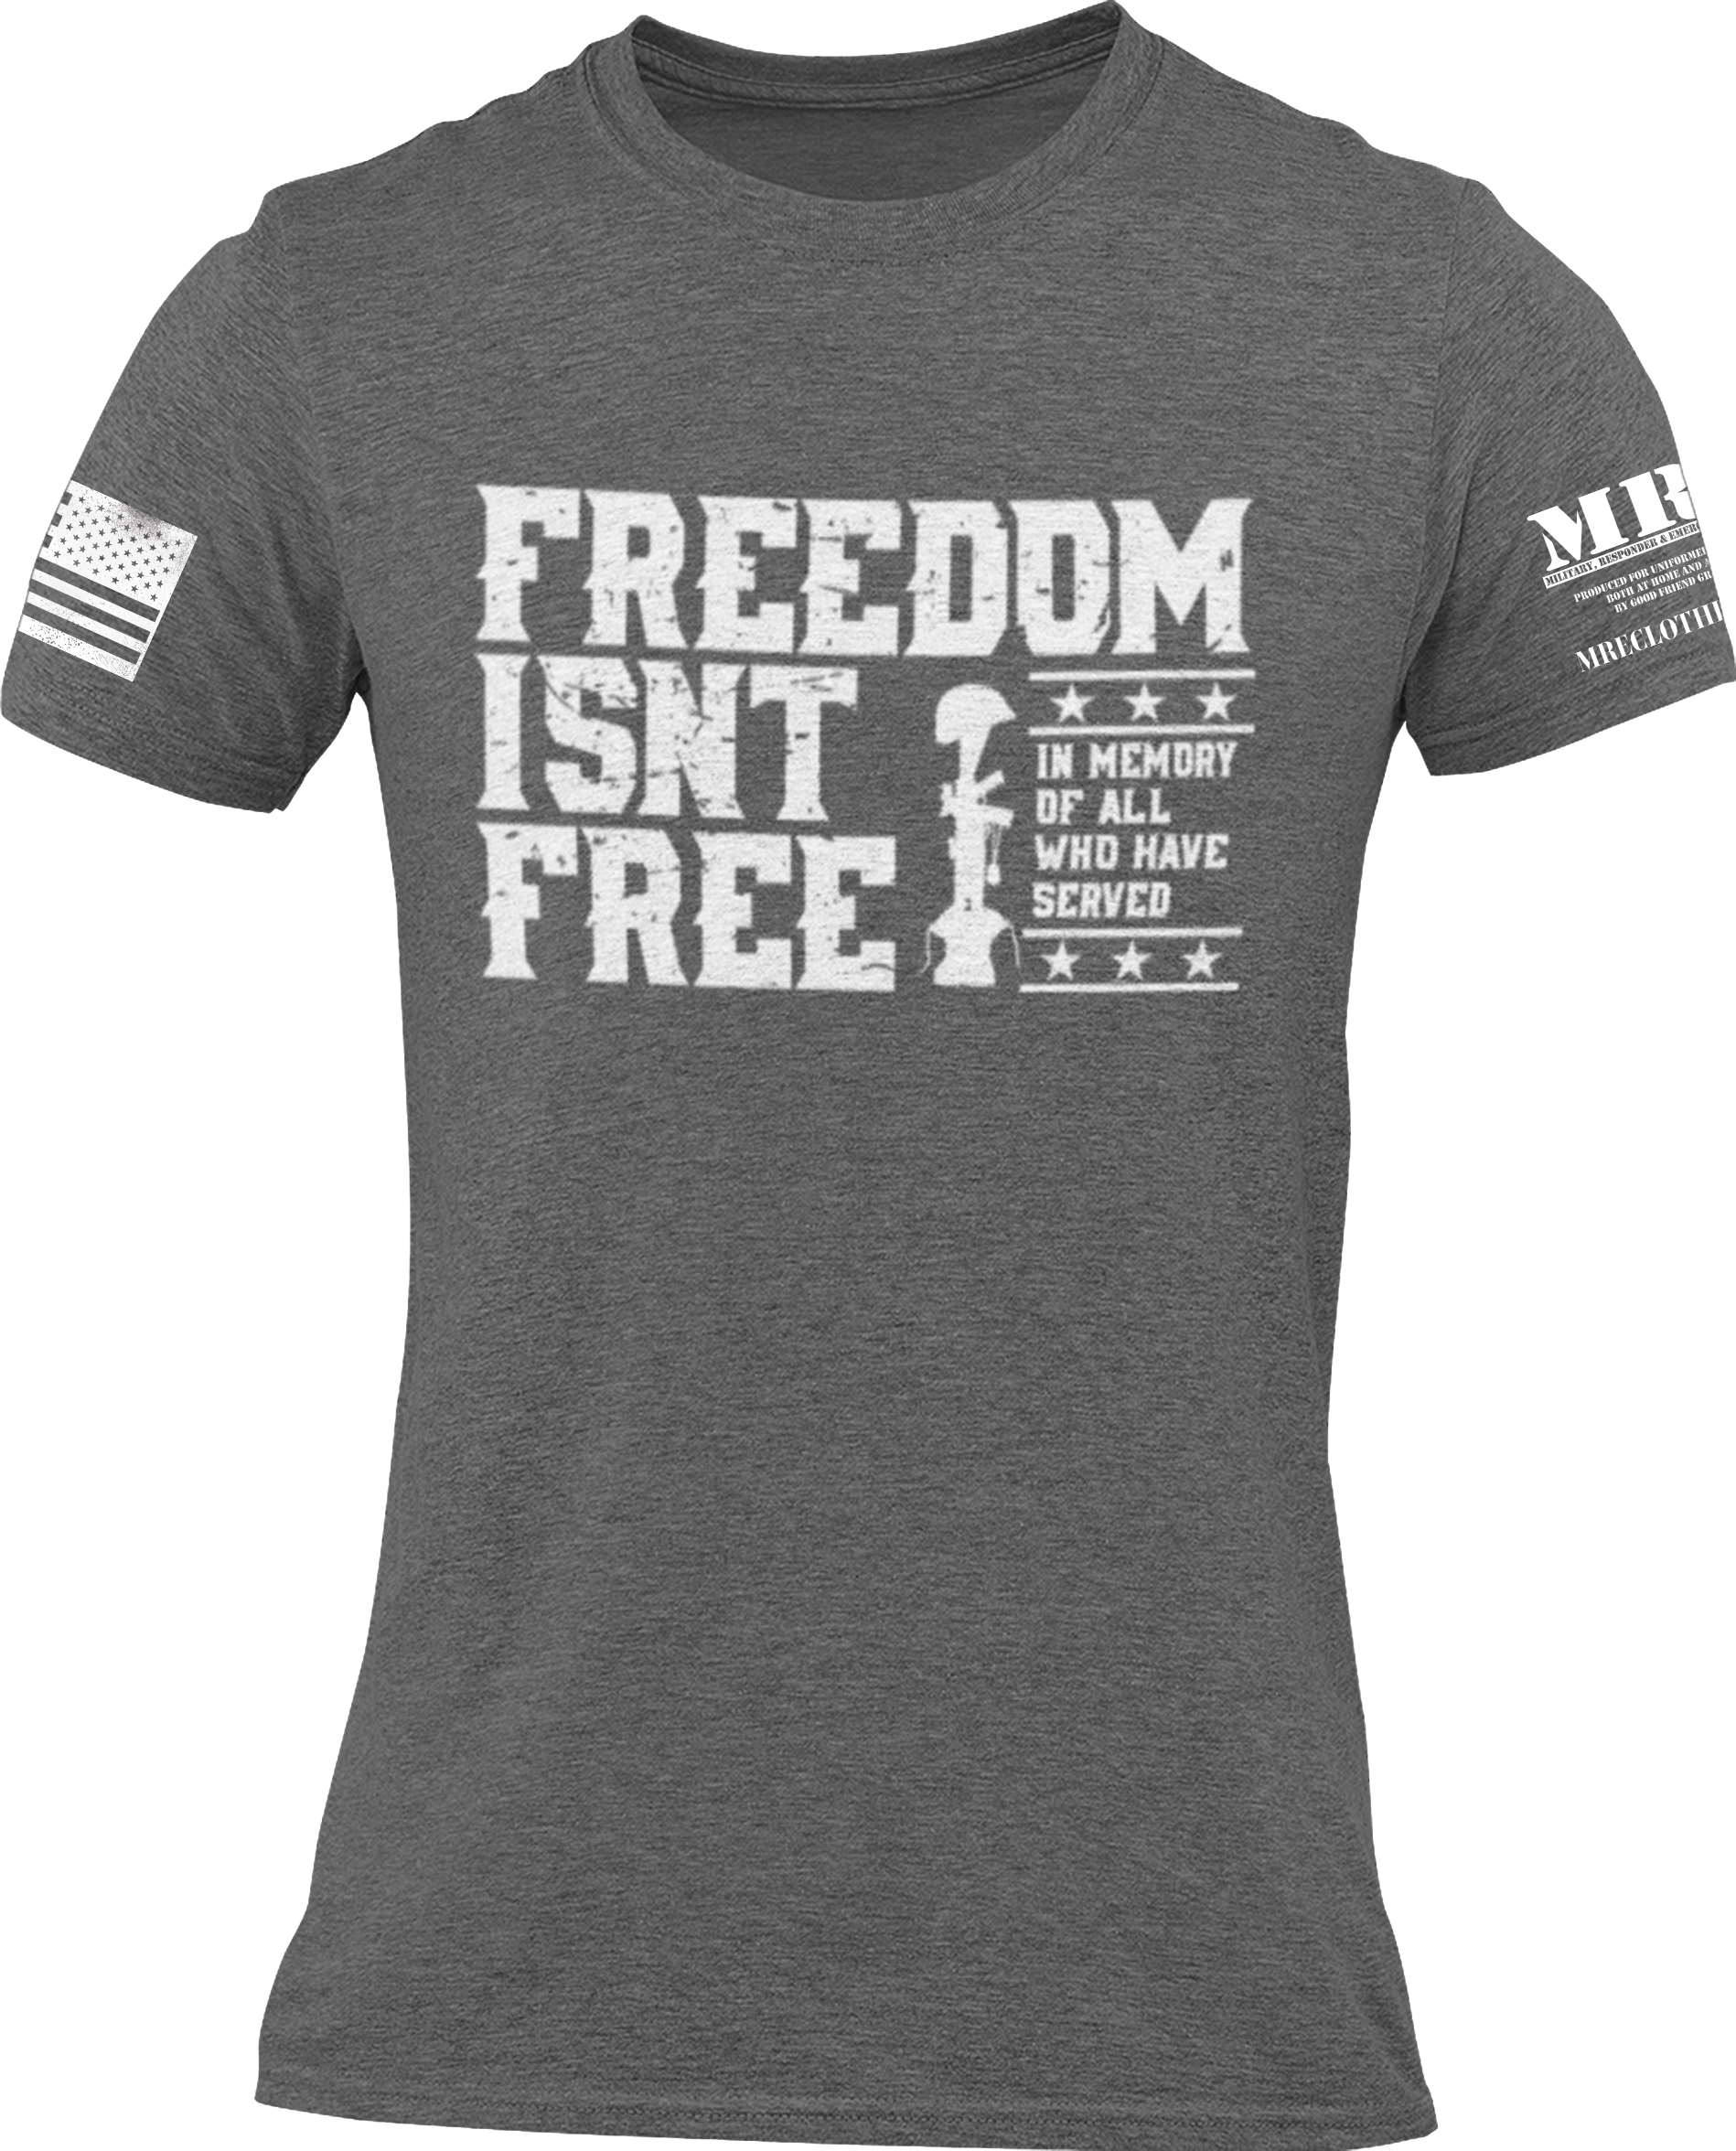 M.R.E. Clothing Graphic T-Shirt Freedom Isn't Free | eBay